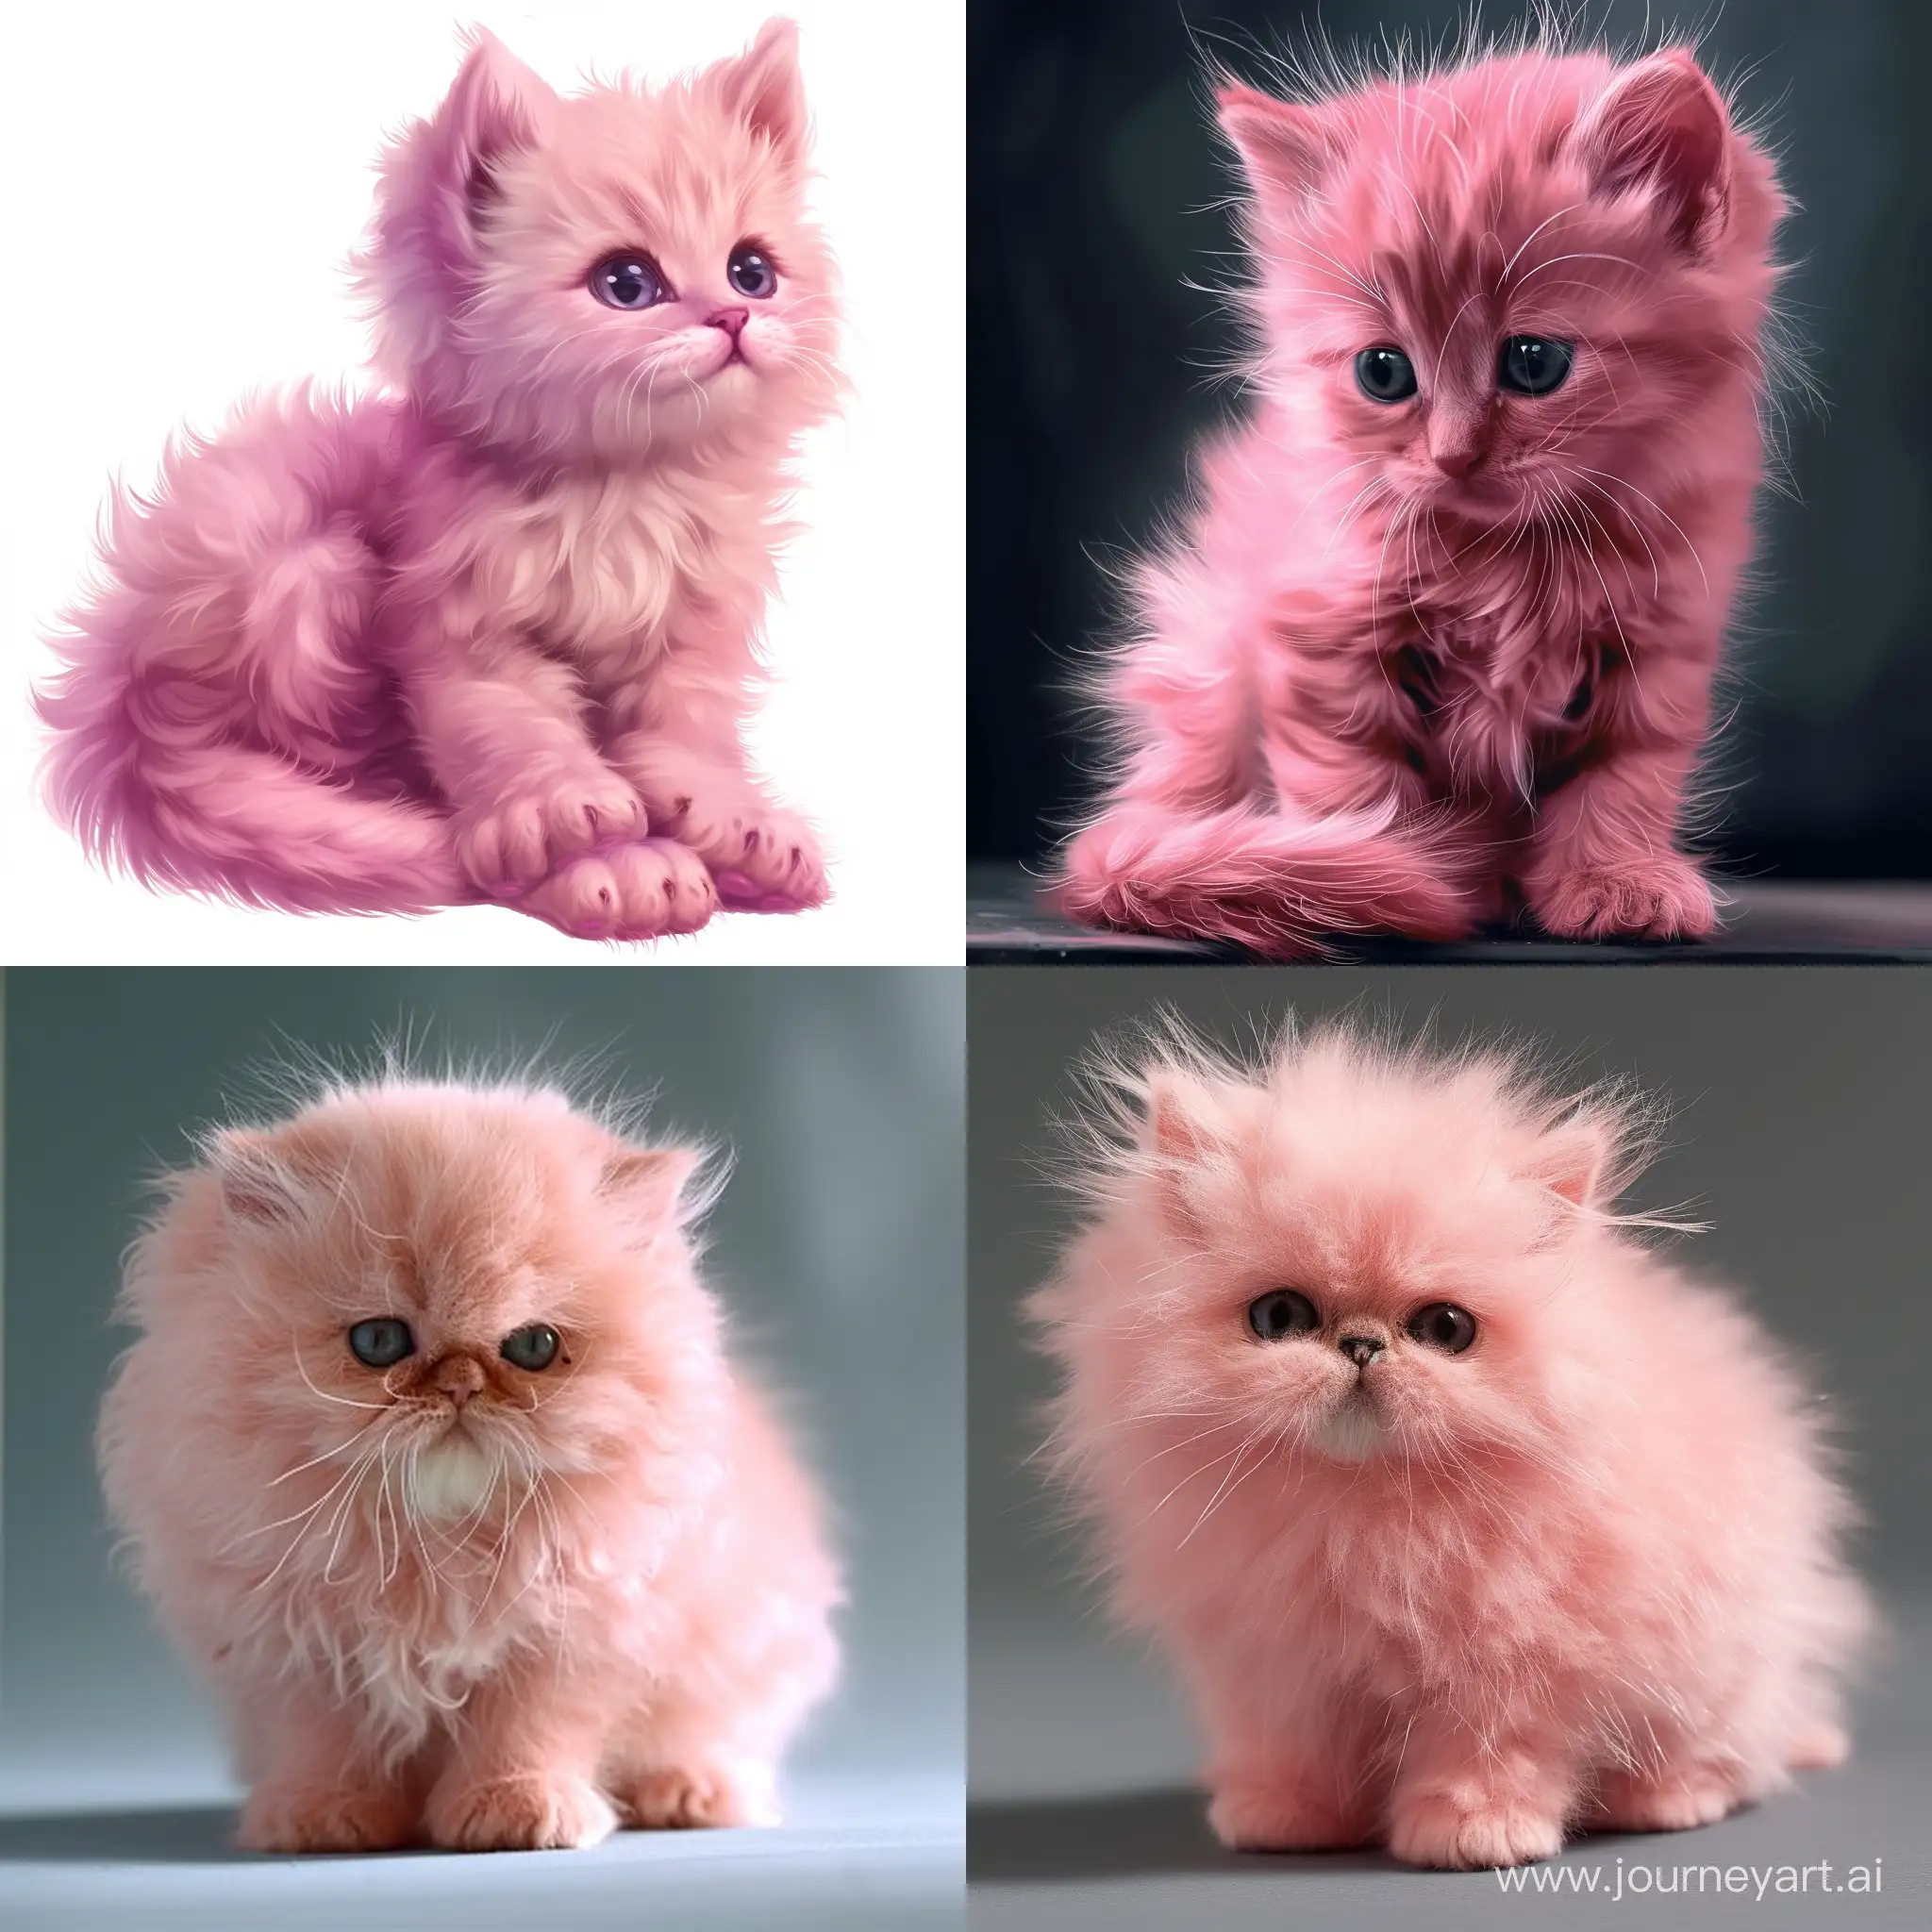 Create an image of a pink fluffy kitten